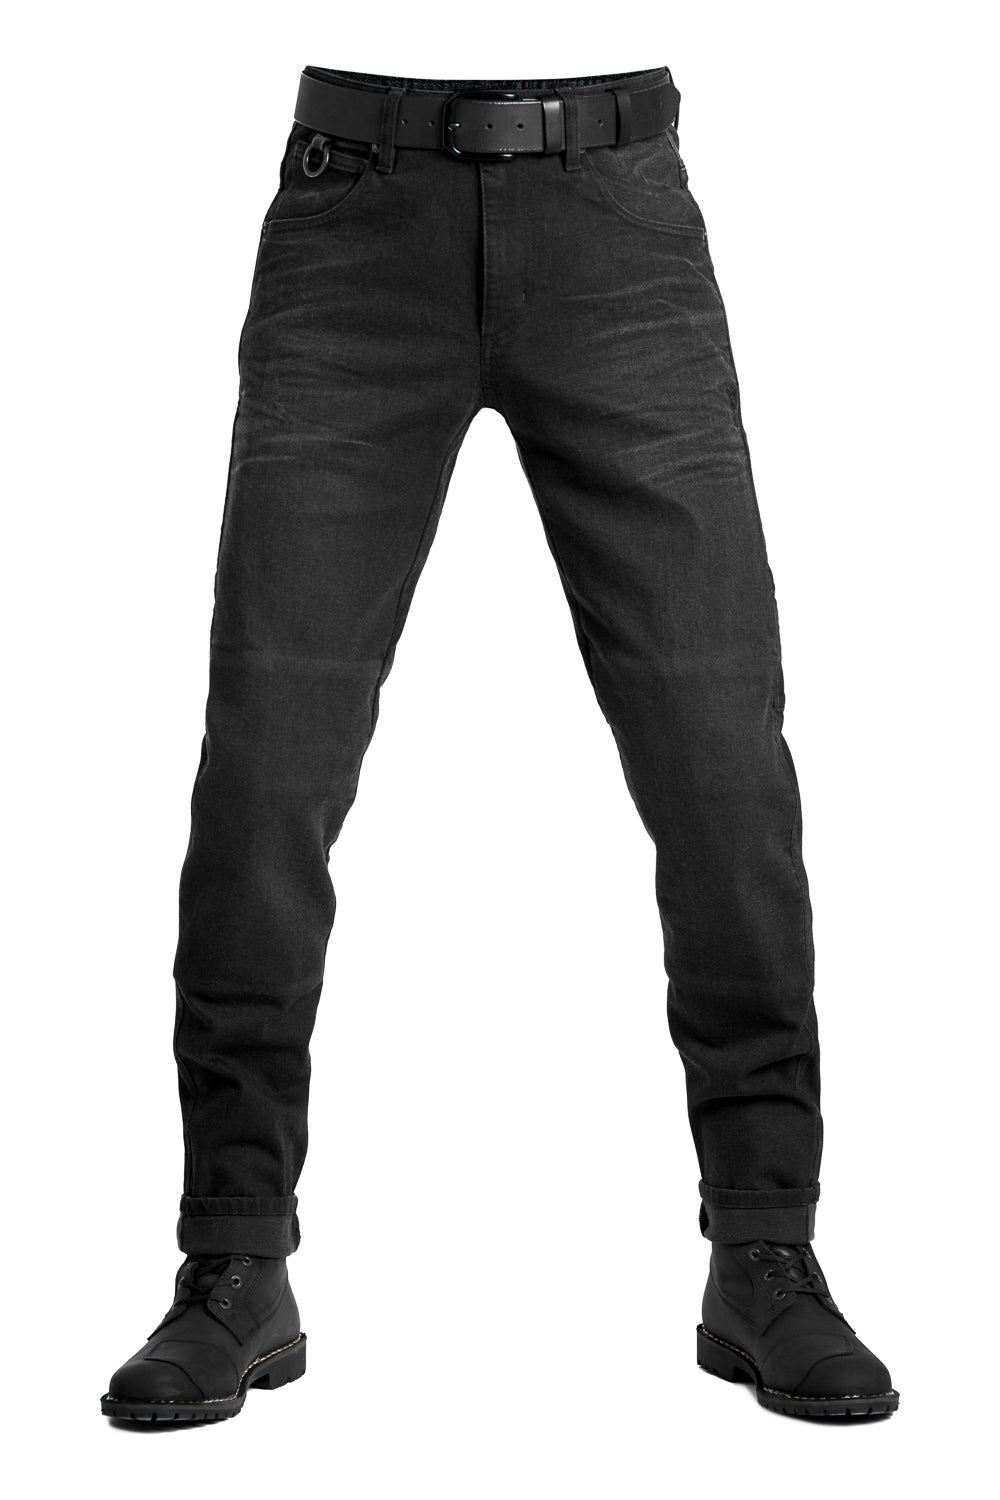 Pando Moto BOSS DYN 01 Jeans